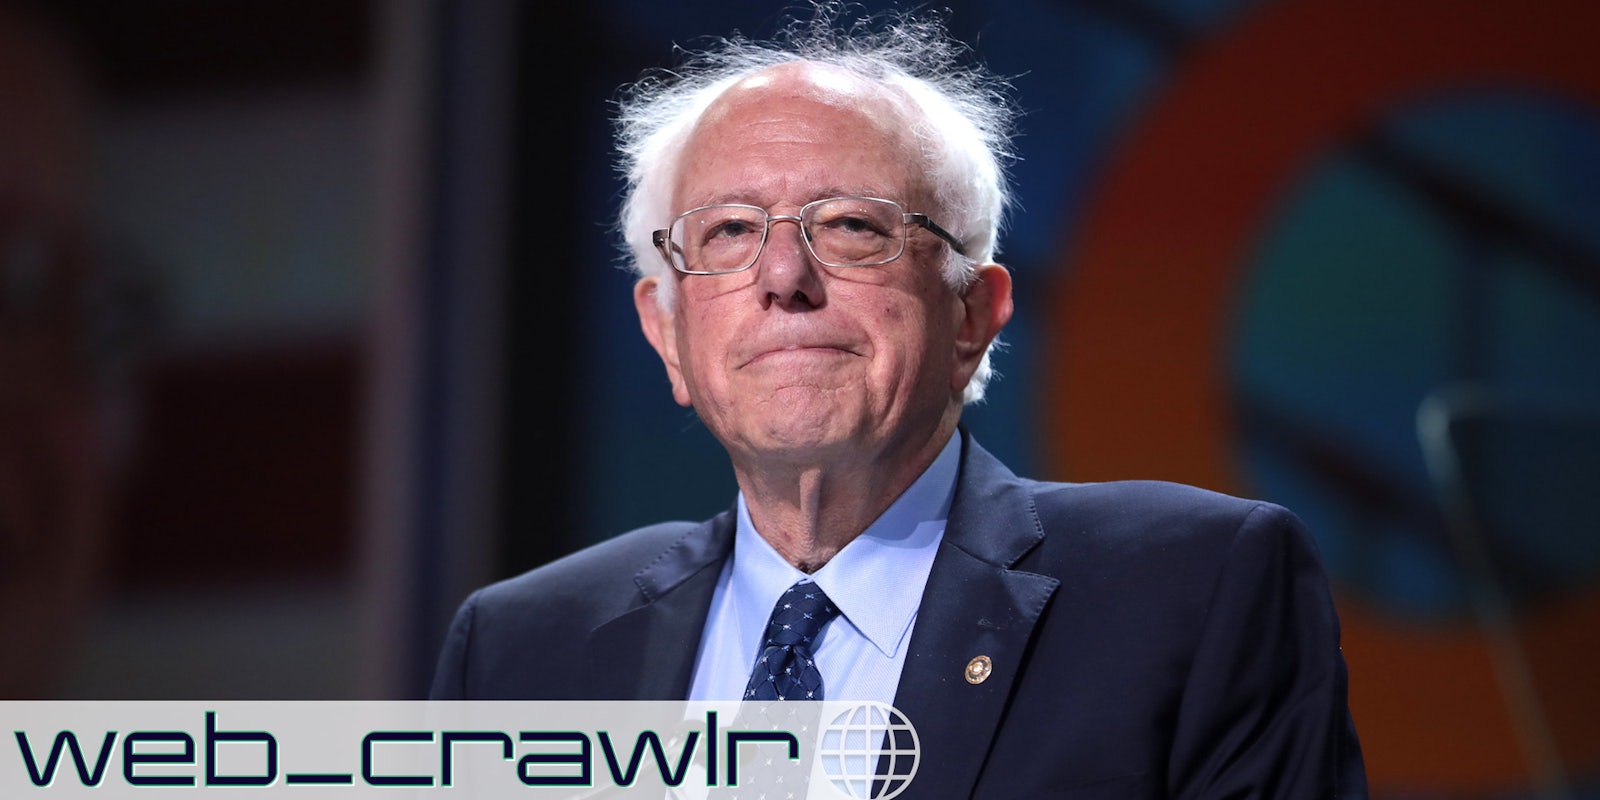 Sen. Bernie Sanders. The Daily Dot newsletter web_crawlr logo is in the bottom left corner.